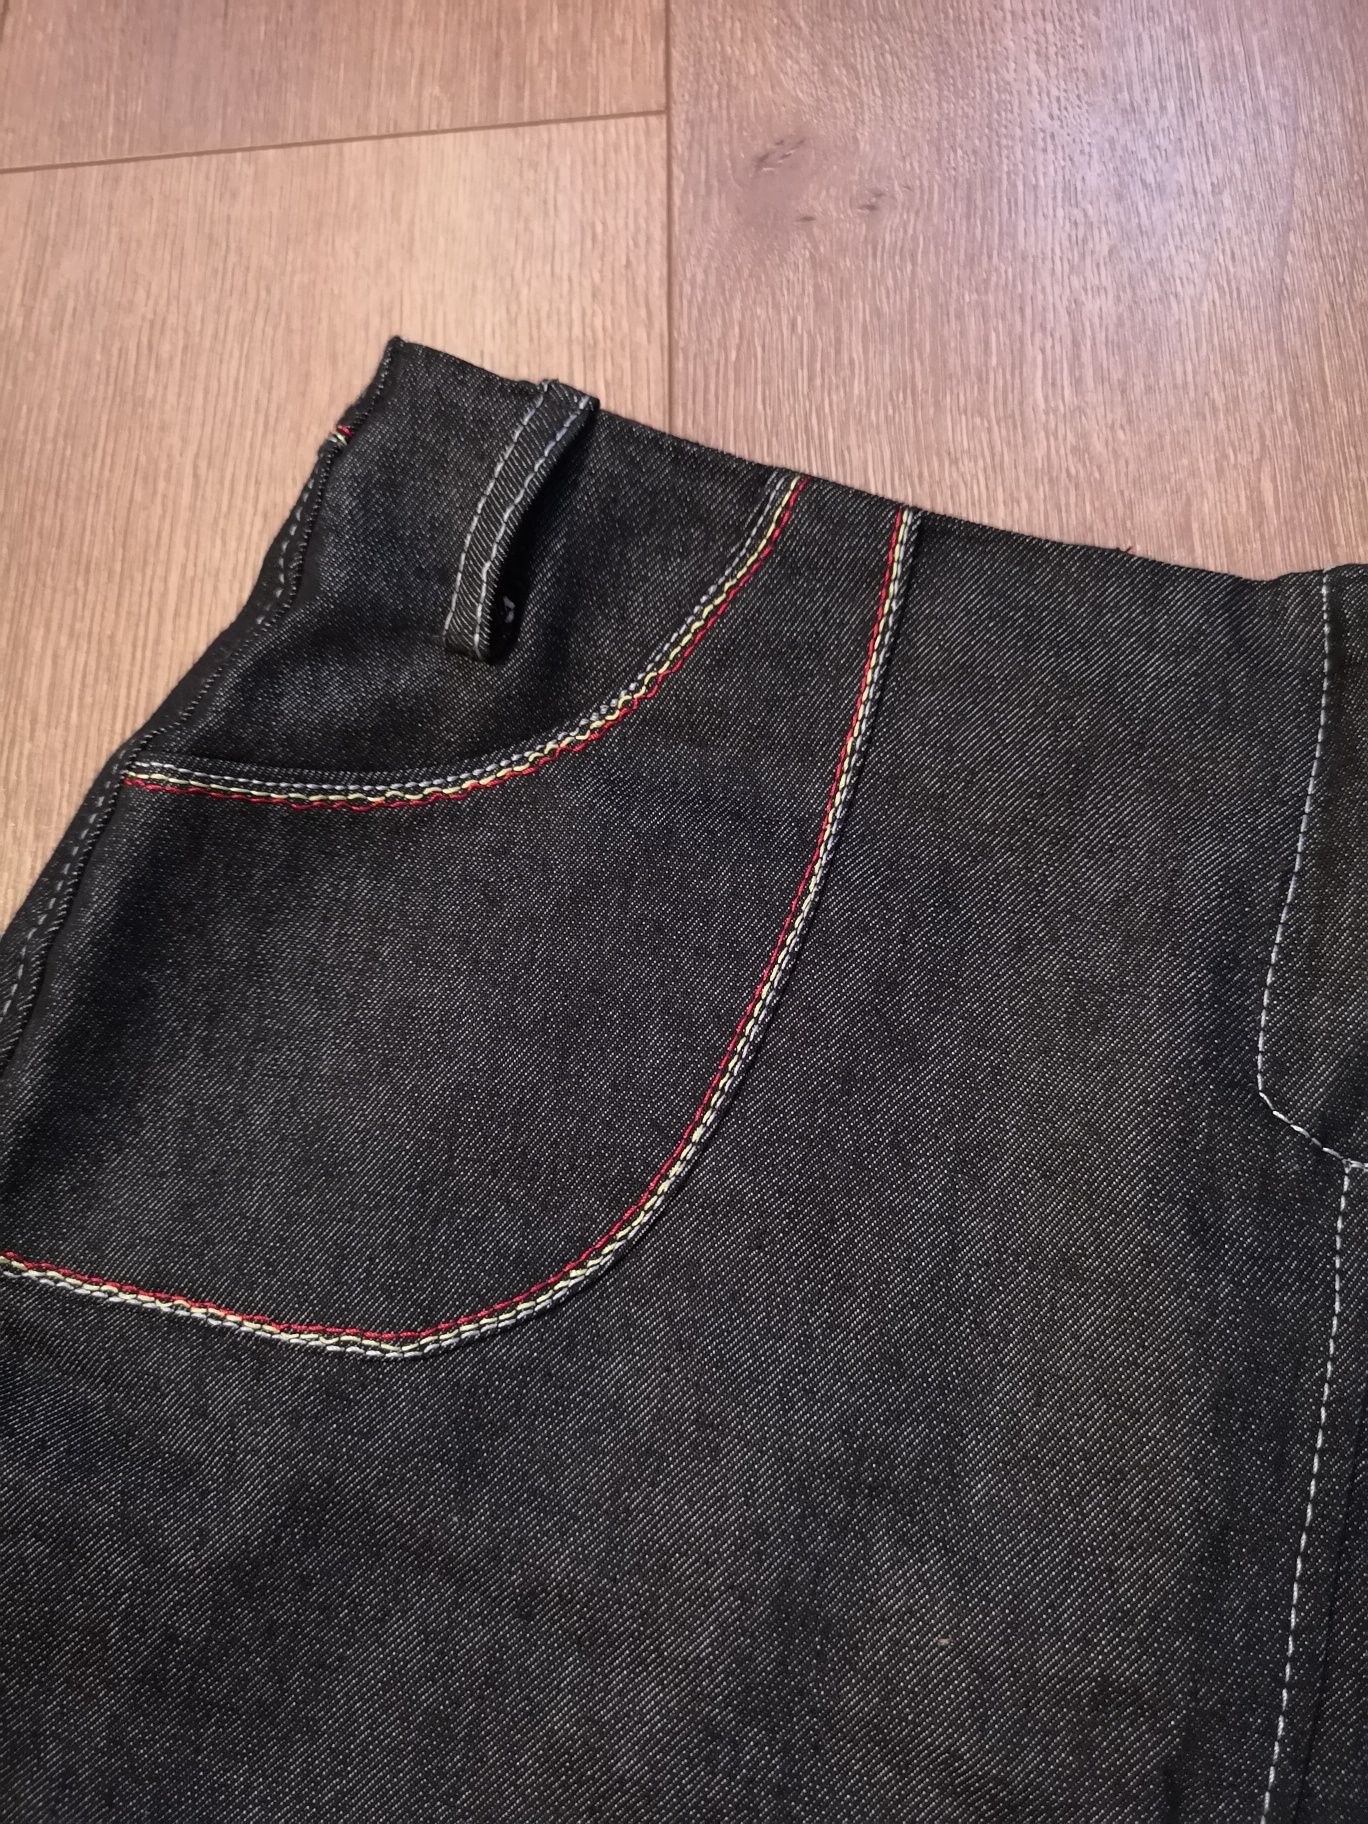 Spódnica czarny jeans, M 38 plisowana